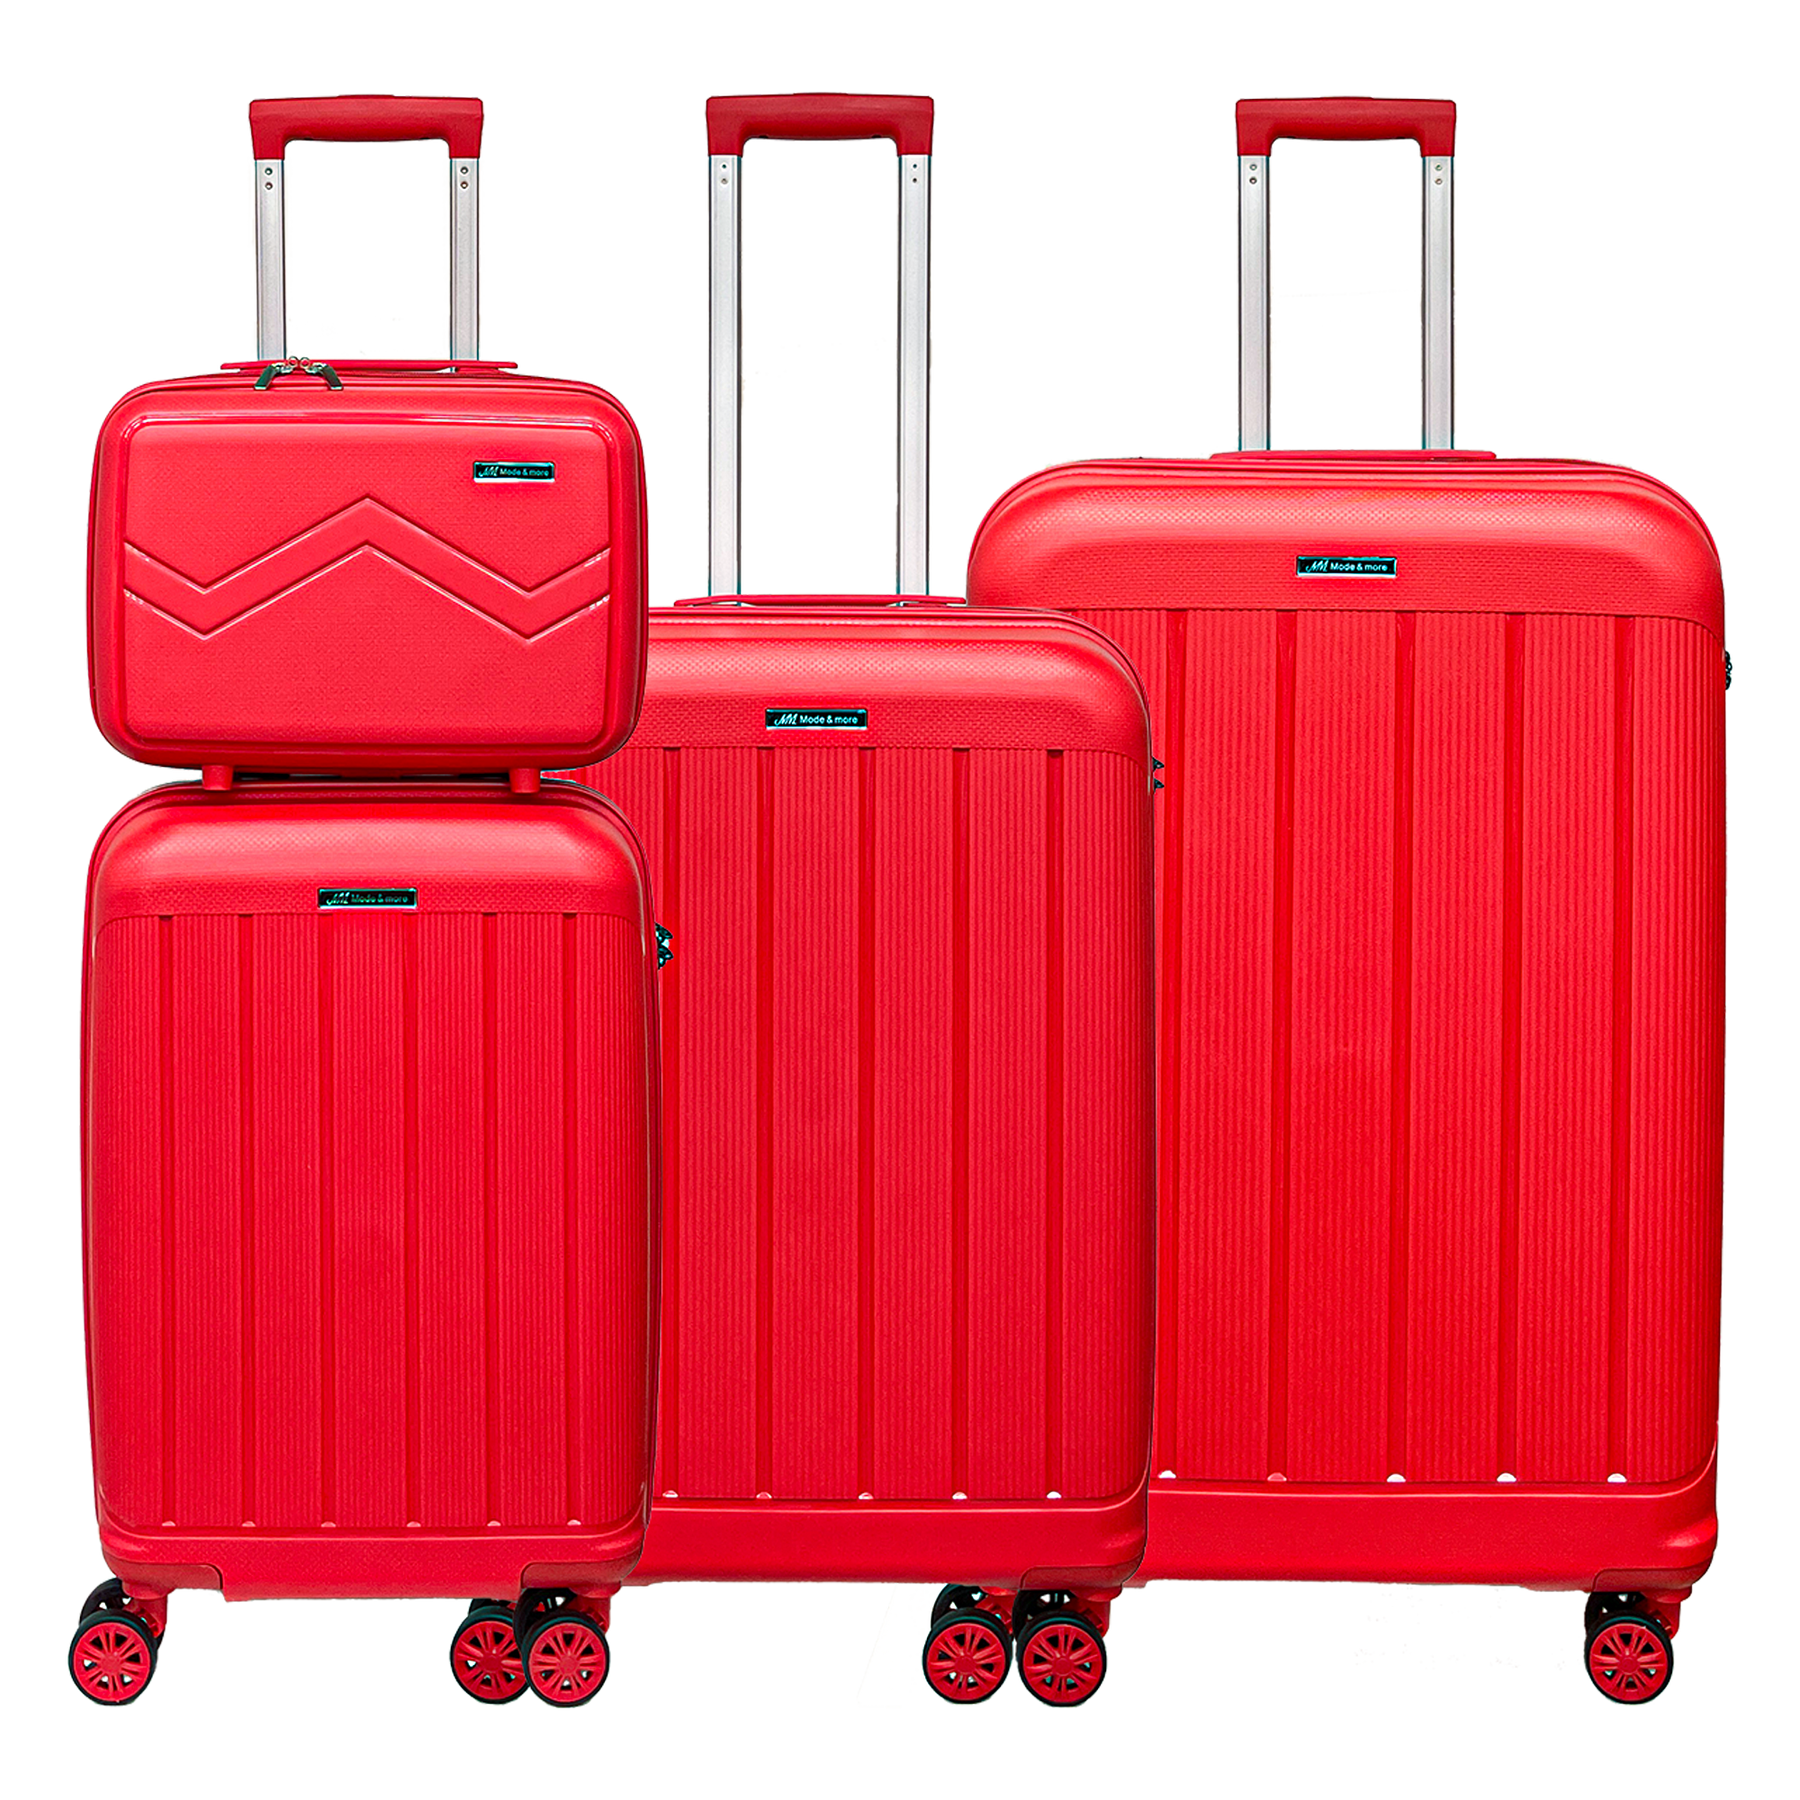 Zestaw 4 walizek z miękkiego polipropylenu, lekkich, z zamkiem TSA, wysokiej jakości i bardzo lekkich, z kosmetyczką